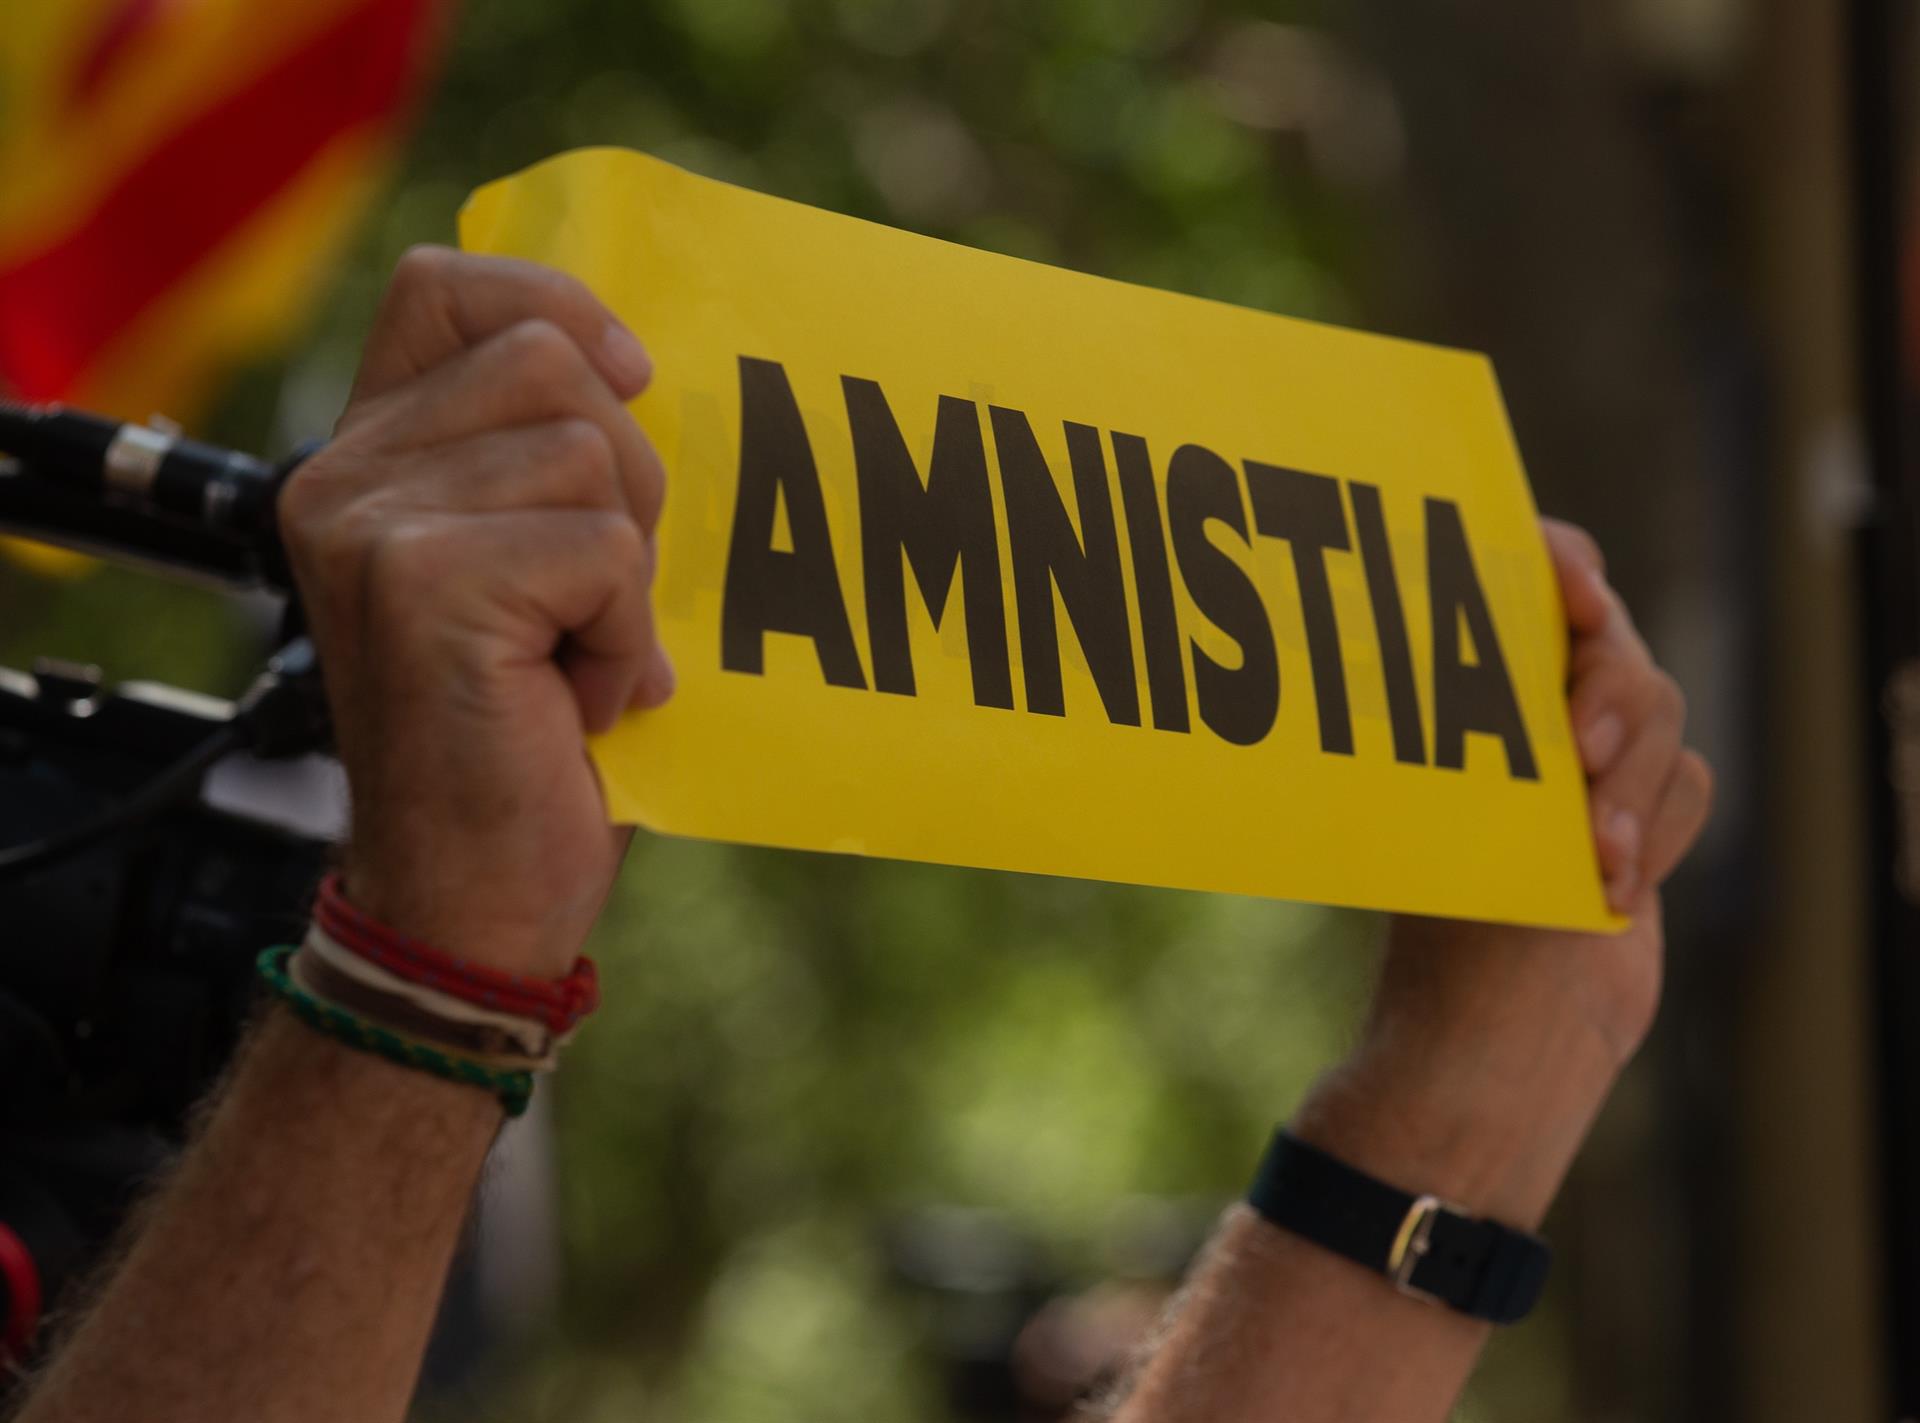 Sumar insta al PSOE a debatir la ley de amnistía “sin complejos ni tabúes”